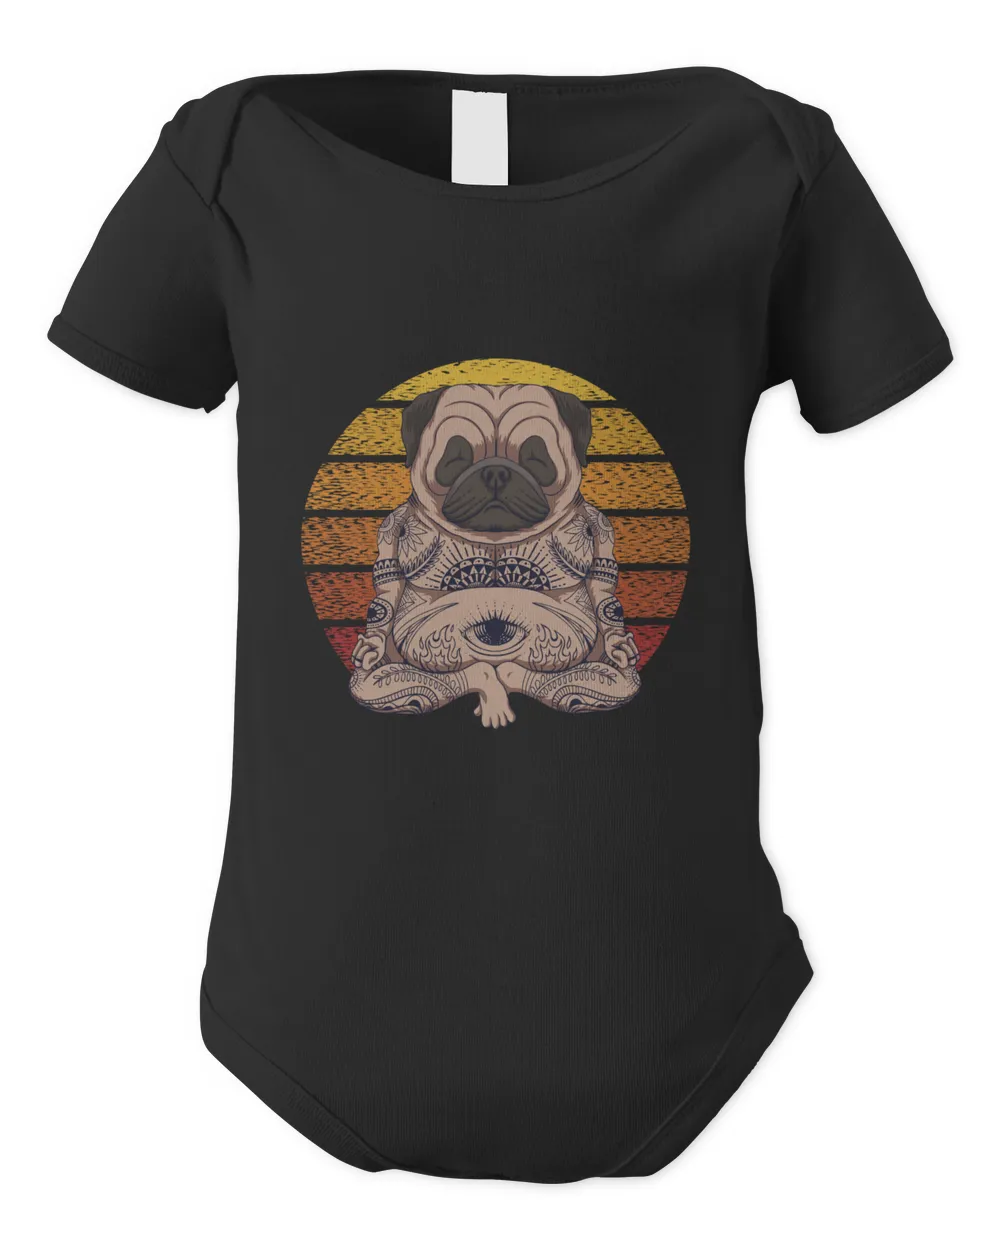 Yoga Bulldog Shirt